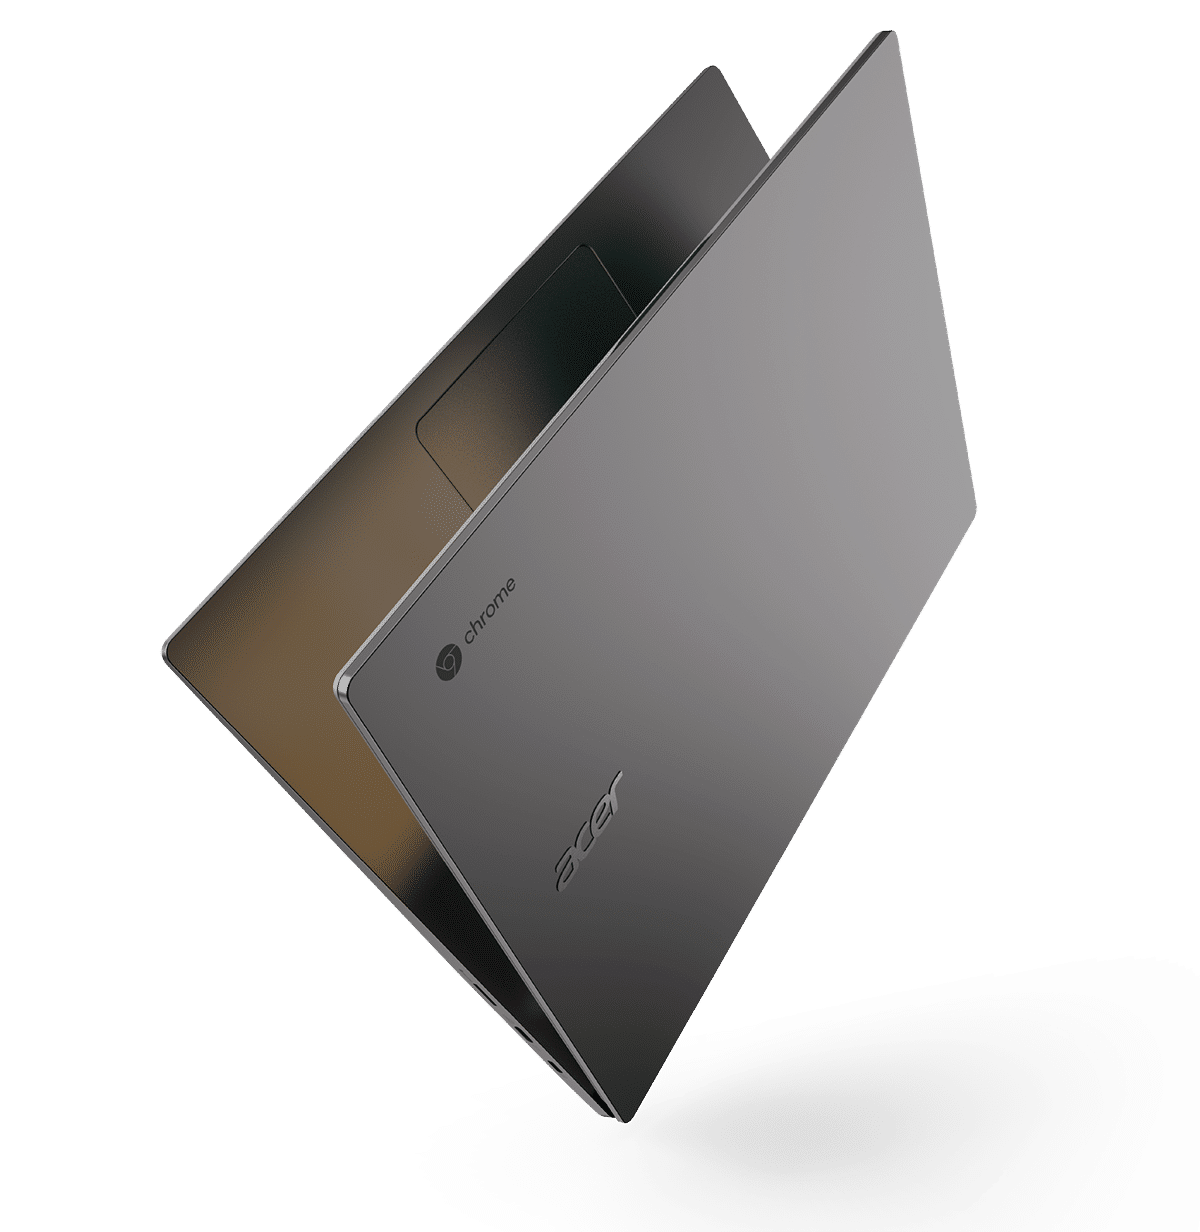 Acer mở rộng dòng Chromebook cho doanh nghiệp với hai laptop cao cấp mới